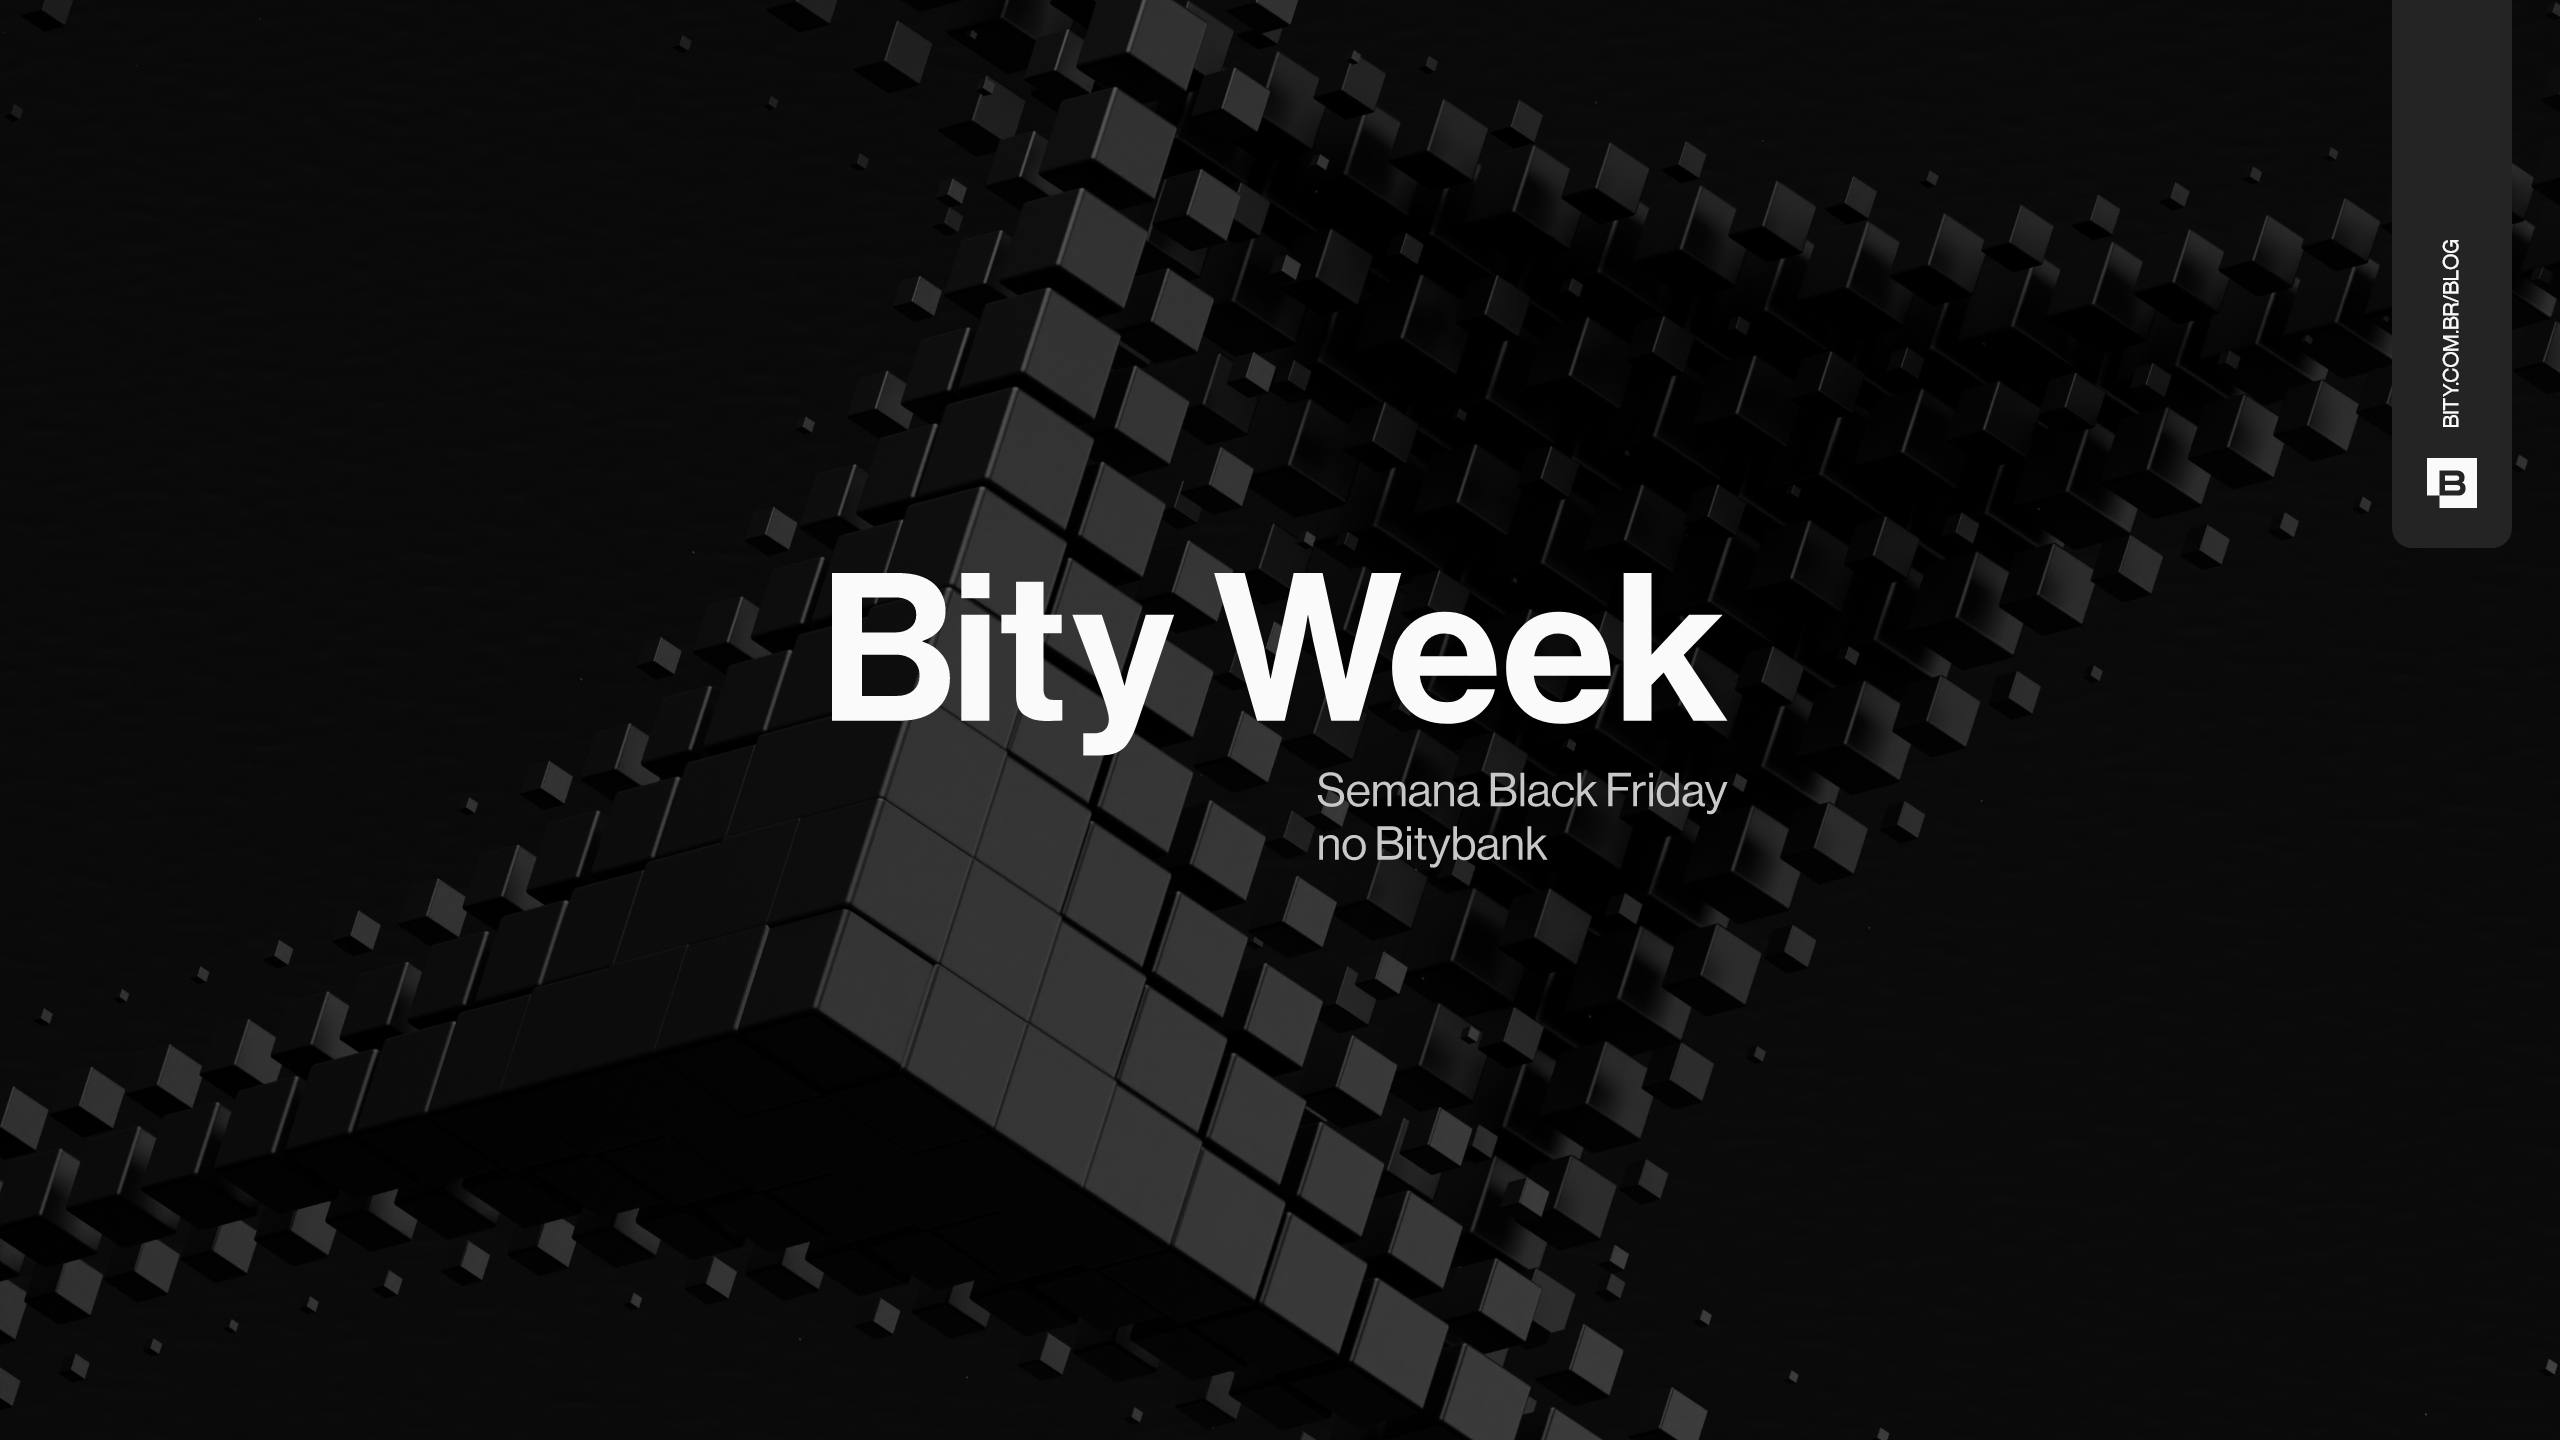 Bity Week - Semana de Black Friday da Bitybank